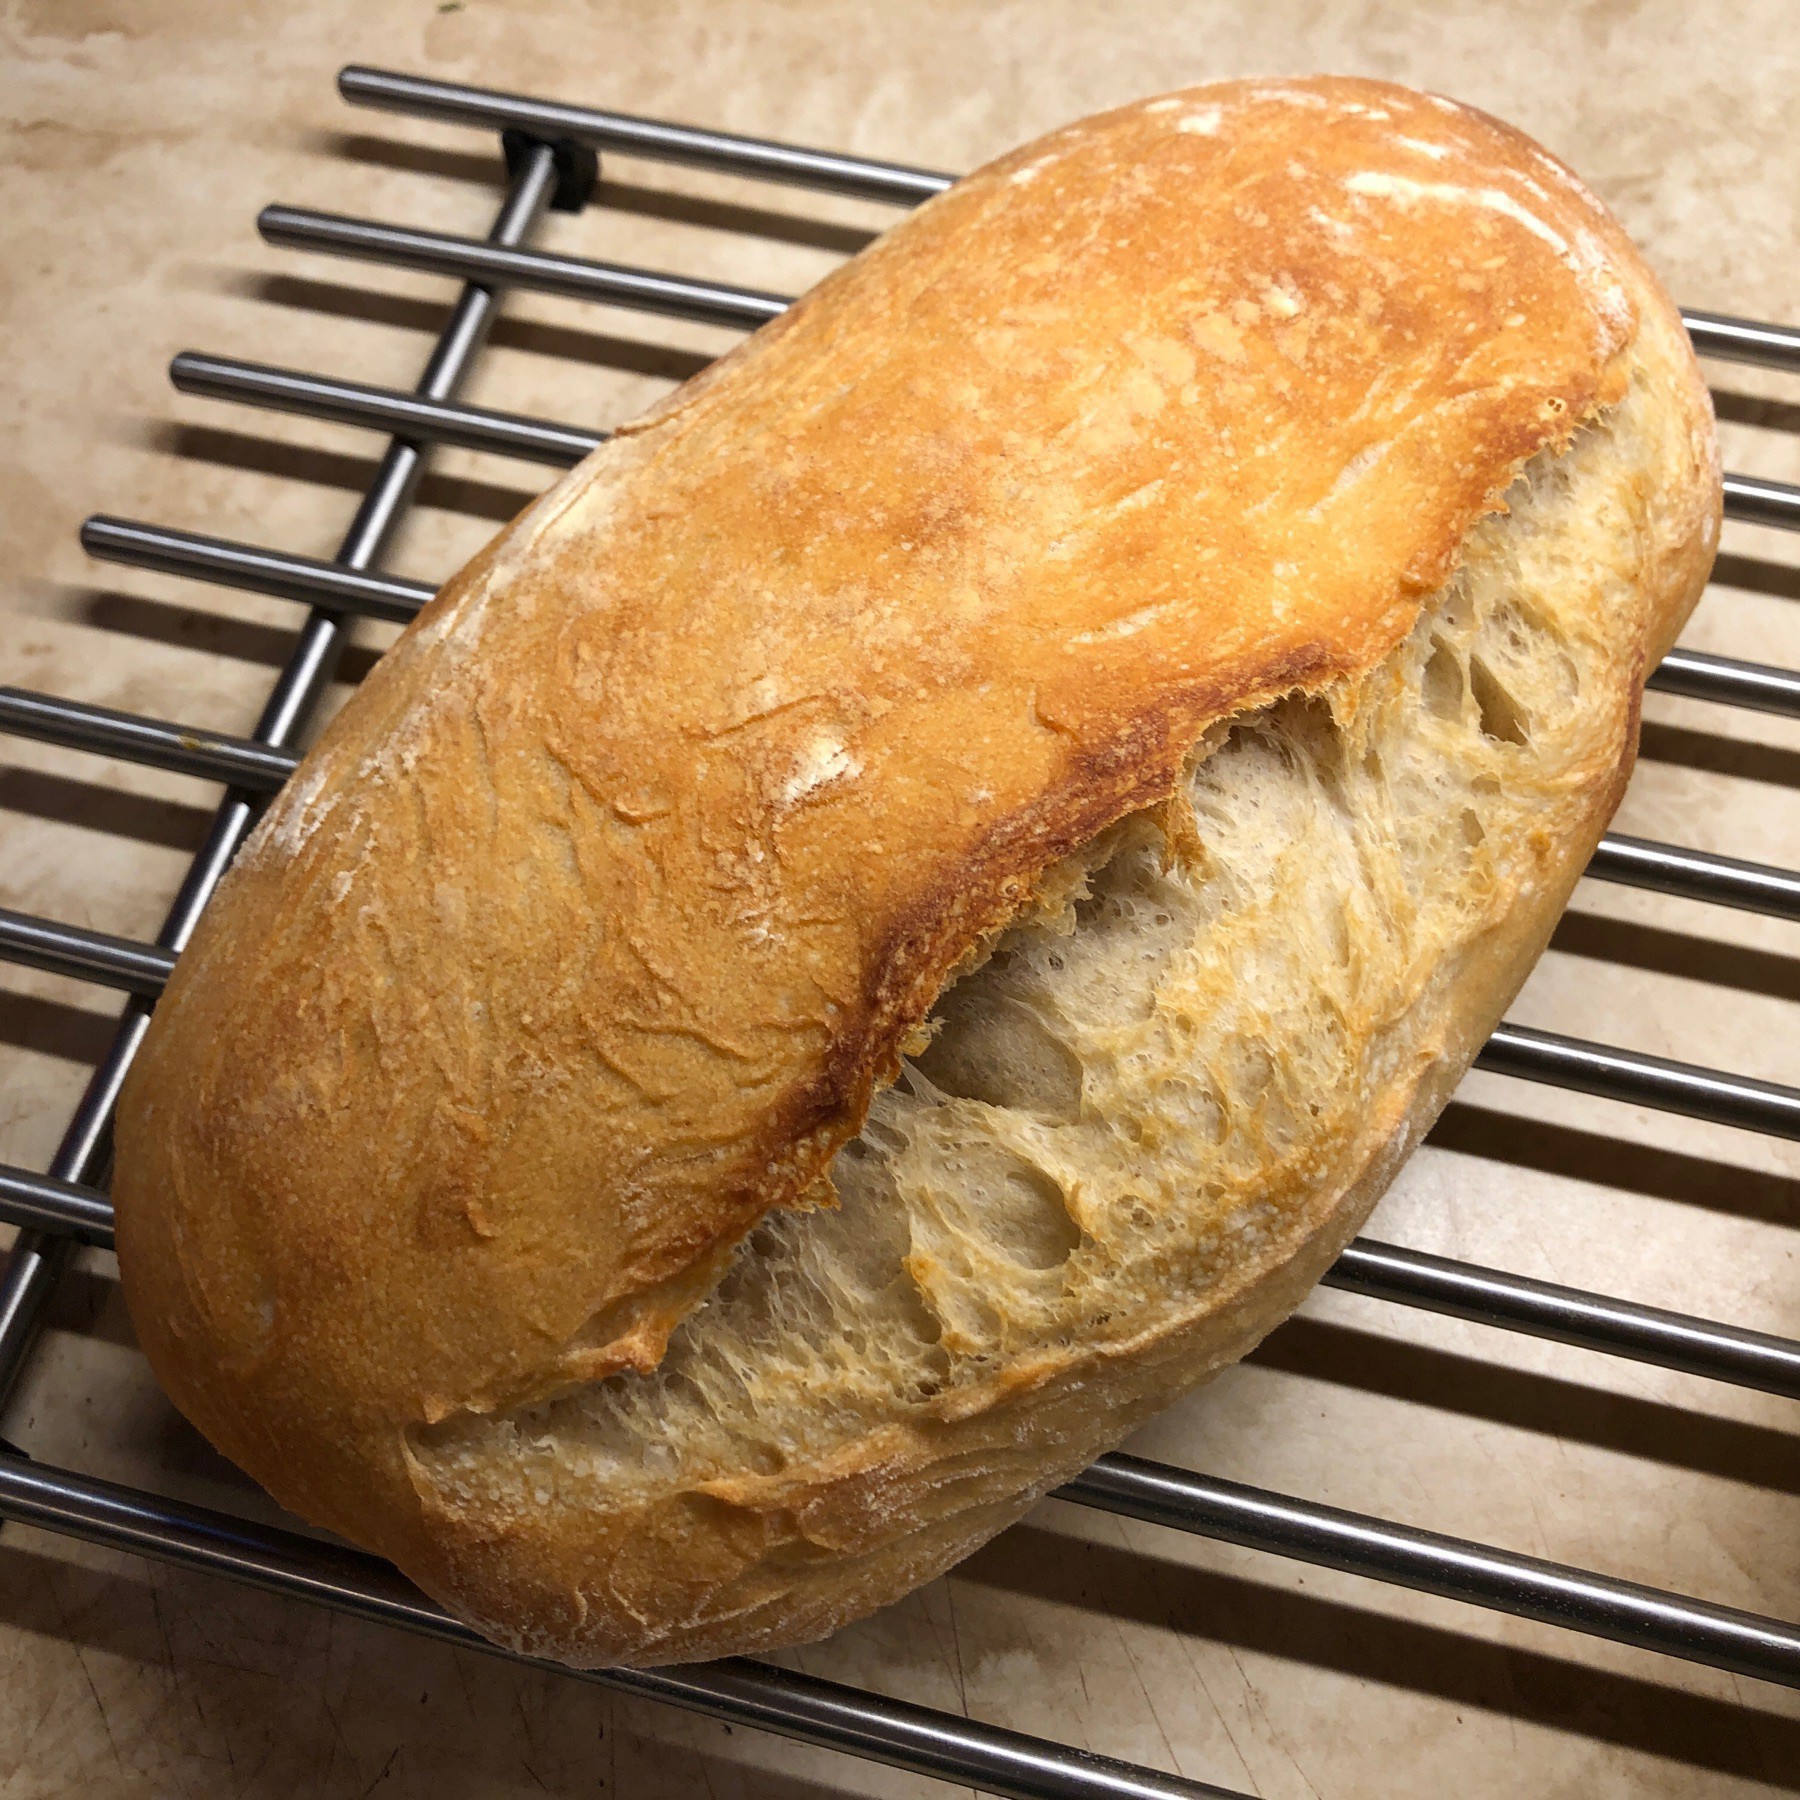 Sourdough bread cooling.